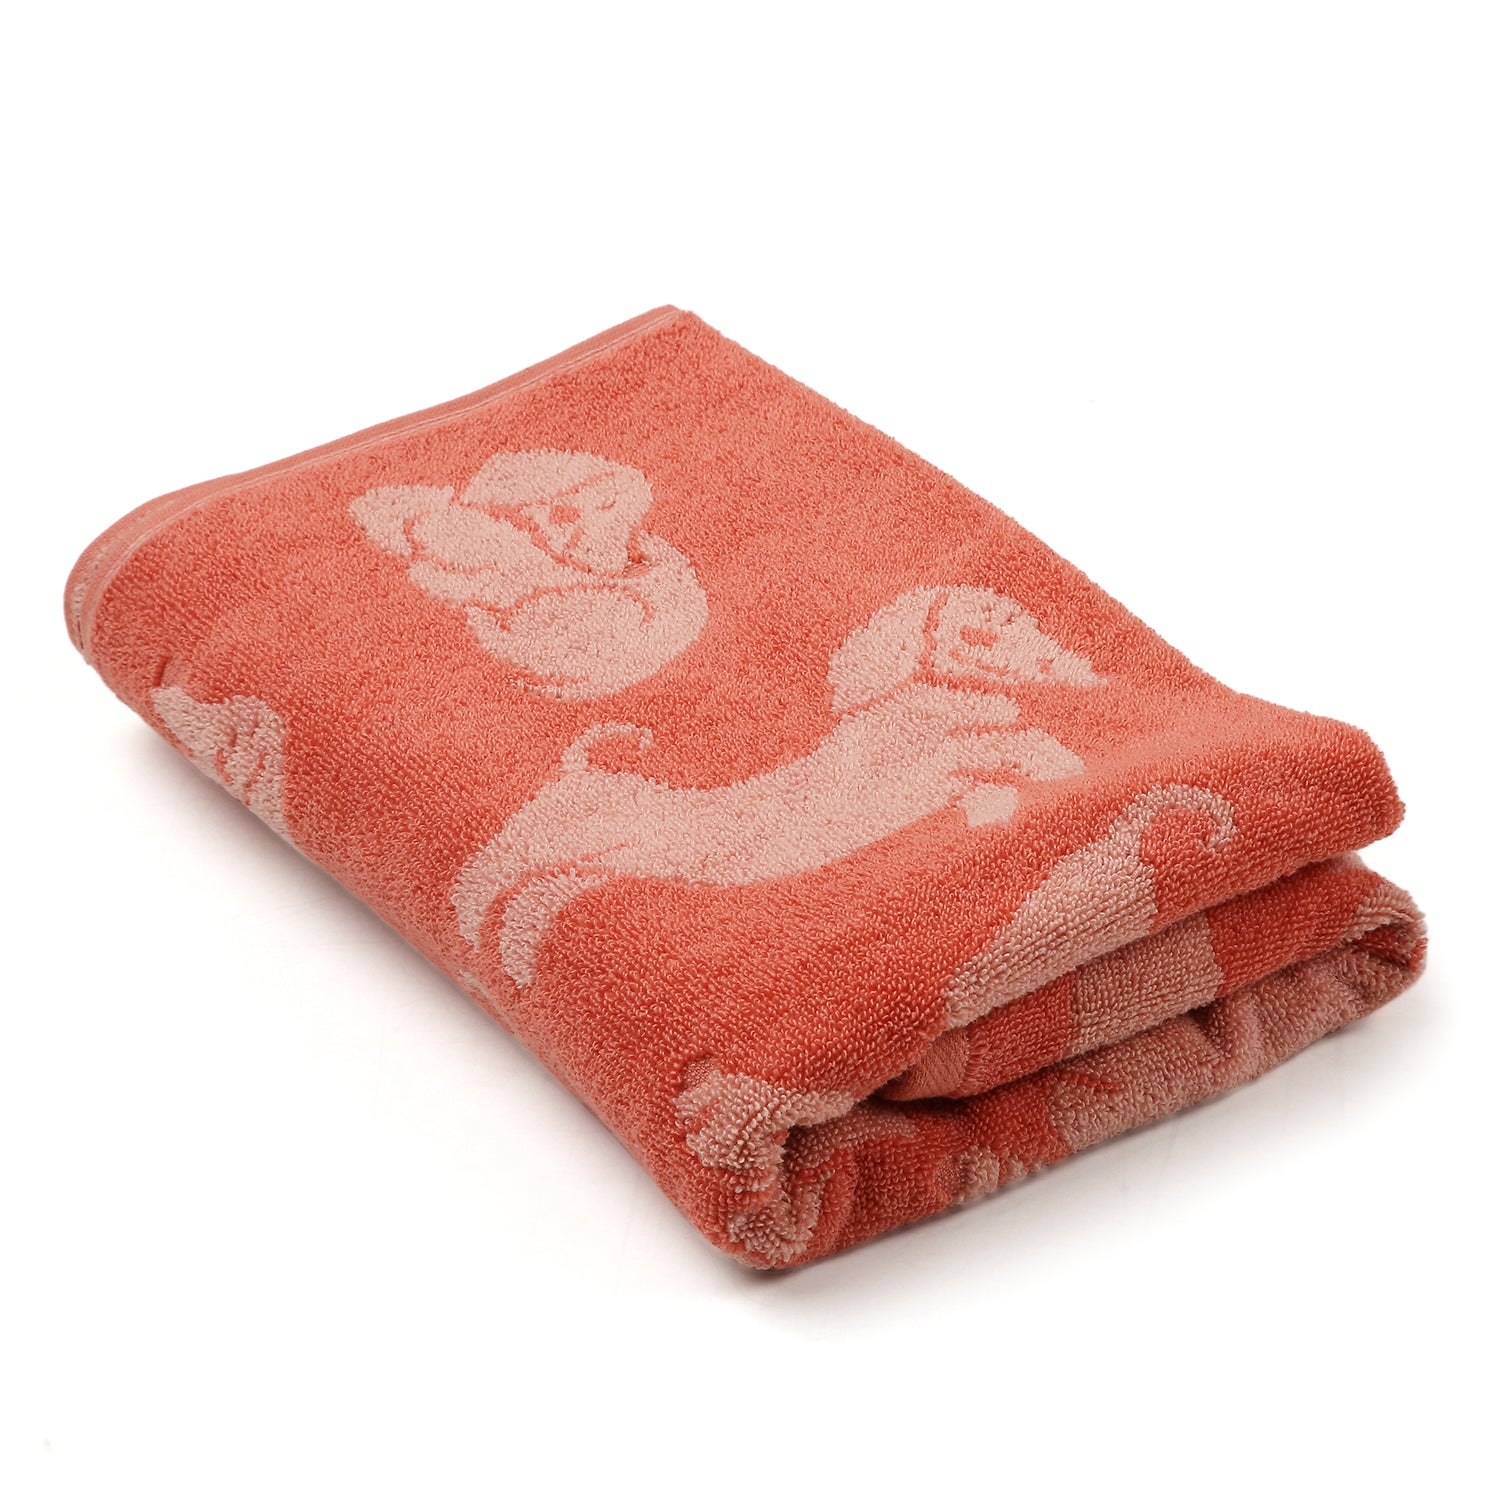 Doggo Terry Towel -   Bath/Hand/ Wash Towel